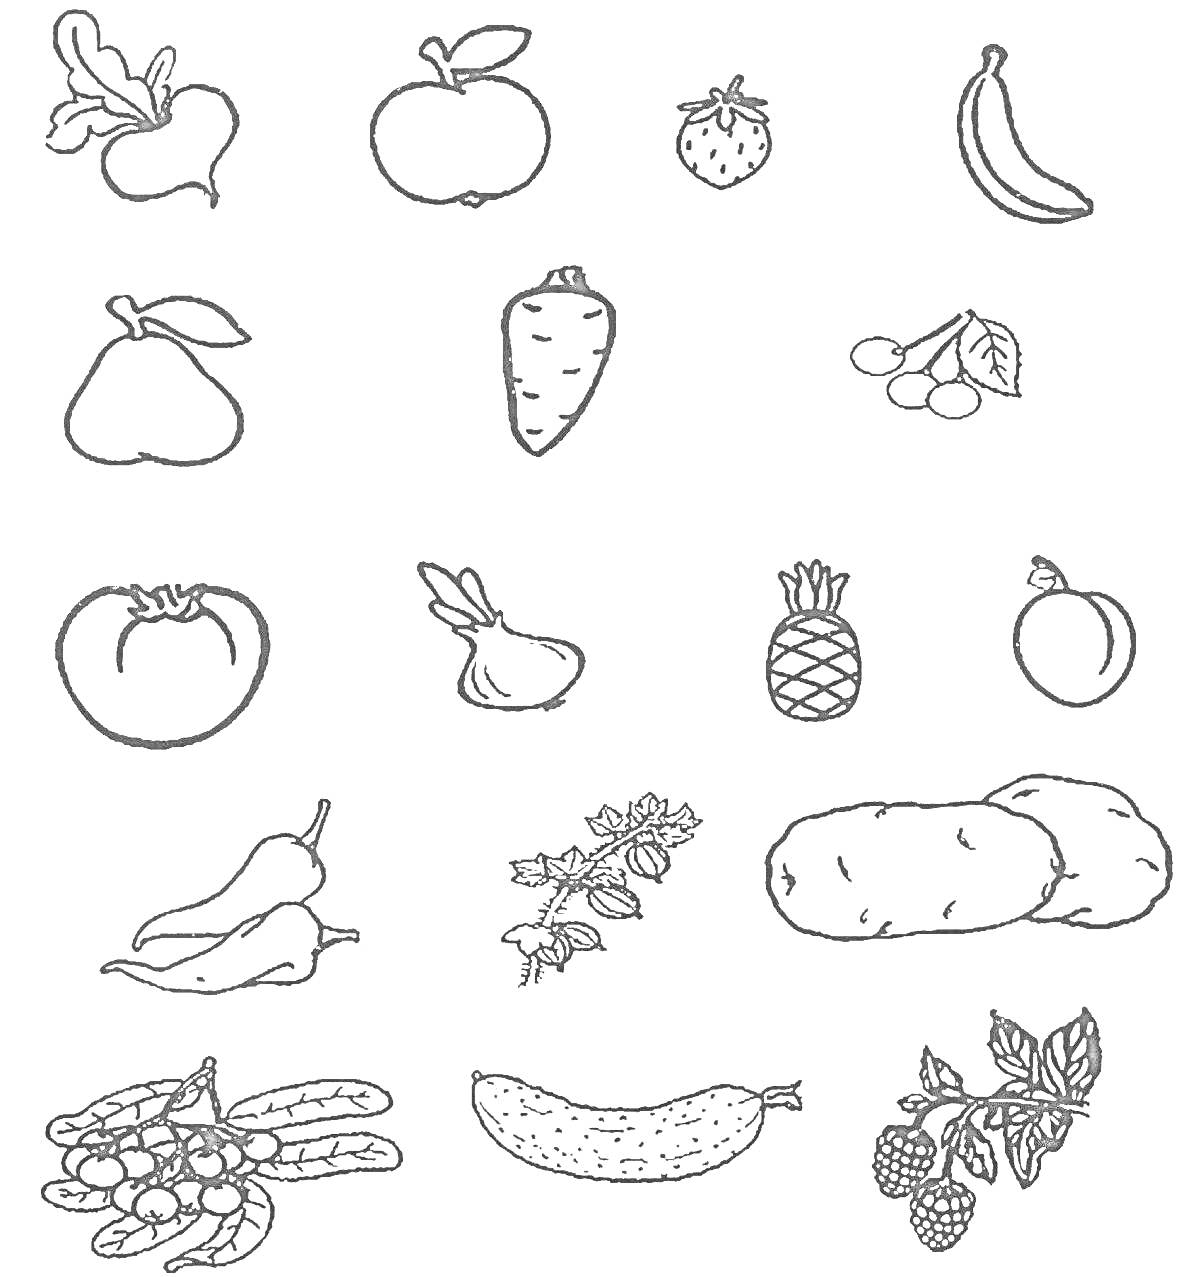 Растительная жизнь: яблоко, клубника, банан, груша, морковь, виноград, томат, лук, ананас, апельсин, перец, картофель, вишня, овощные растения, огурец, малина.